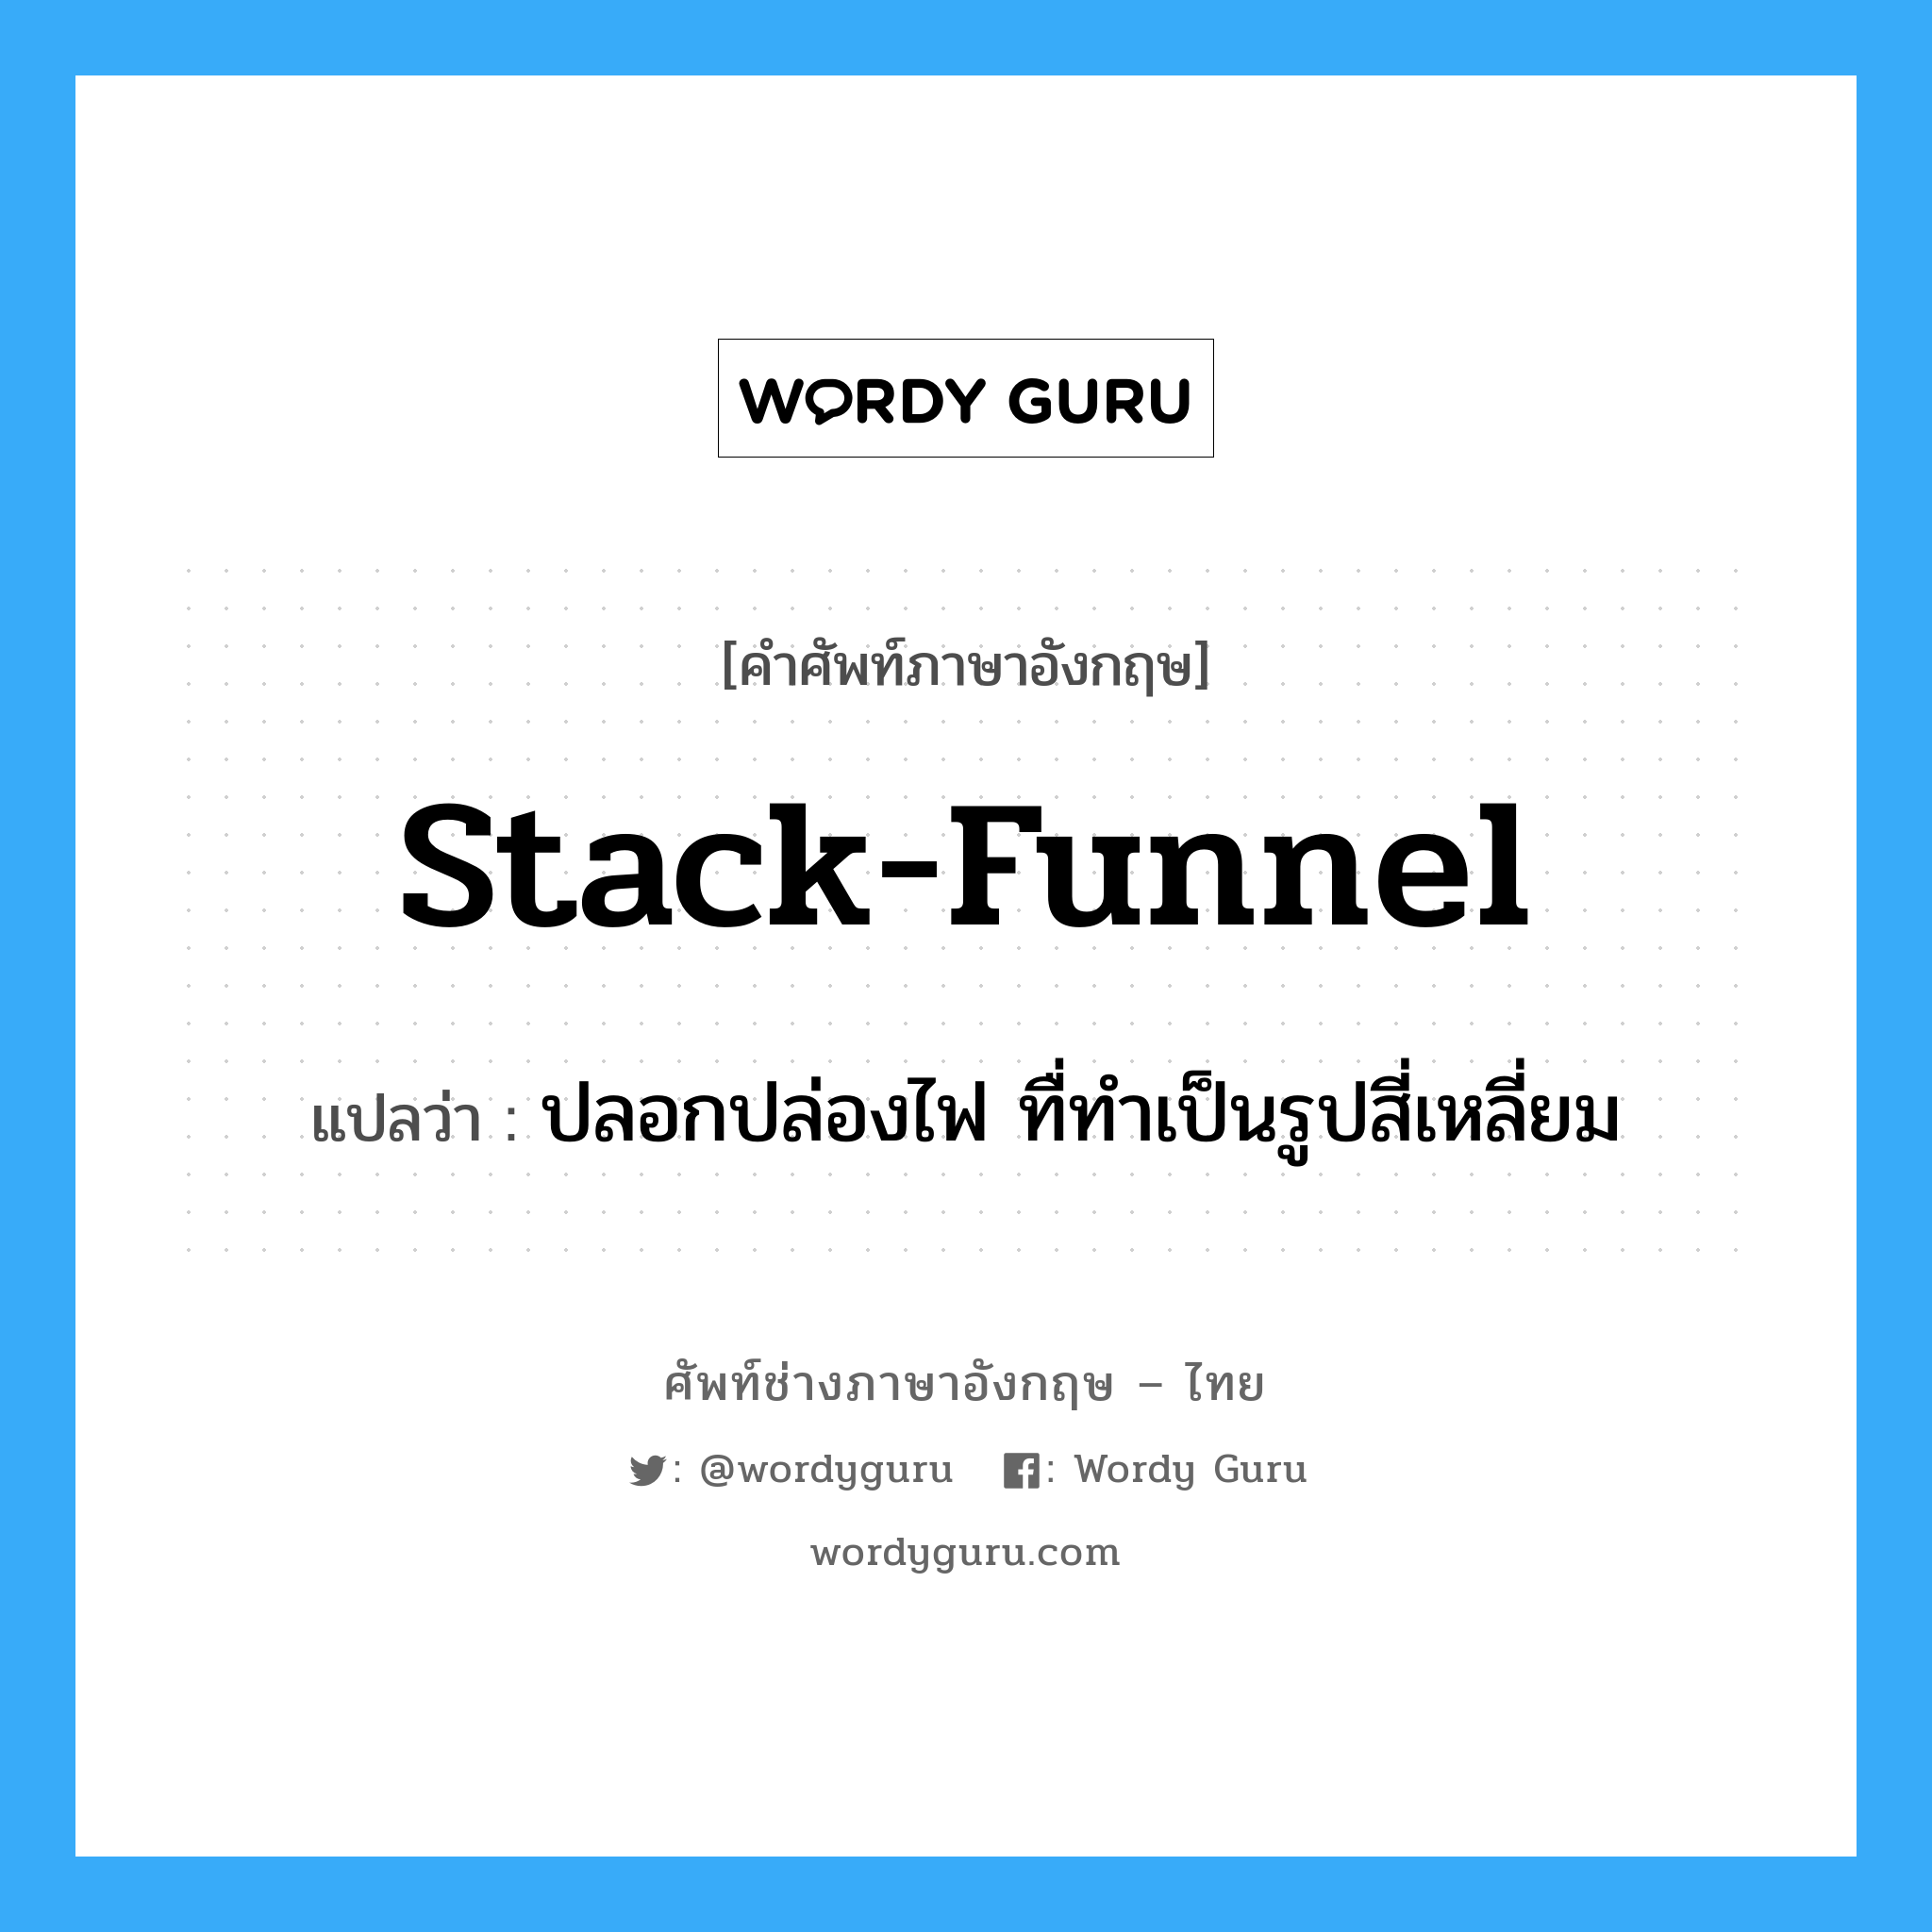 stack-funnel แปลว่า?, คำศัพท์ช่างภาษาอังกฤษ - ไทย stack-funnel คำศัพท์ภาษาอังกฤษ stack-funnel แปลว่า ปลอกปล่องไฟ ทื่ทำเป็นรูปสี่เหลี่ยม